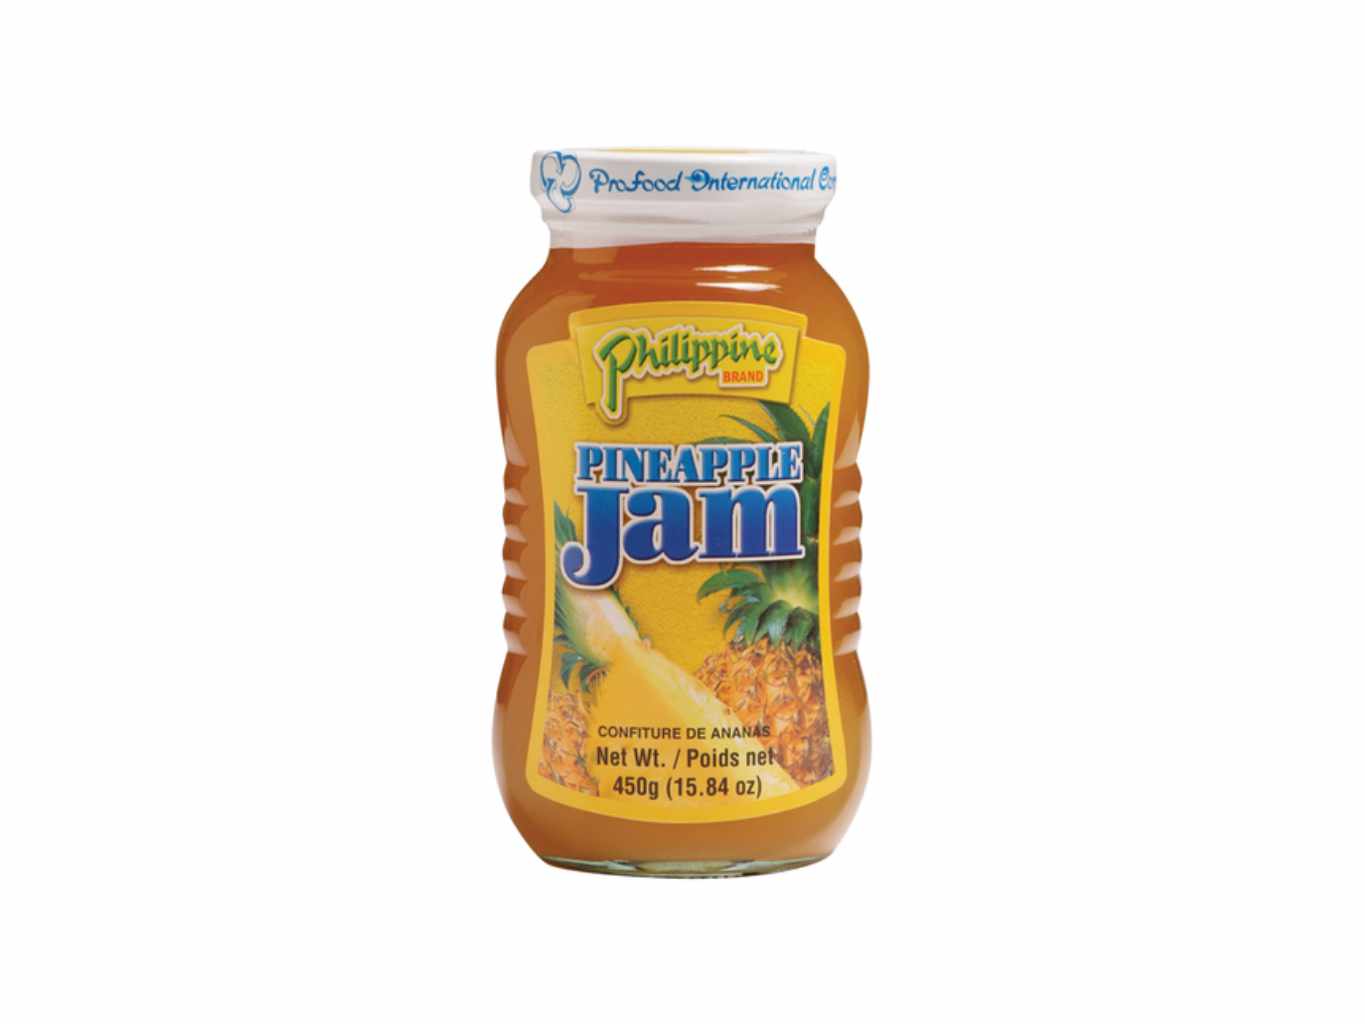 Philippine Brand Ananasový džem 450g